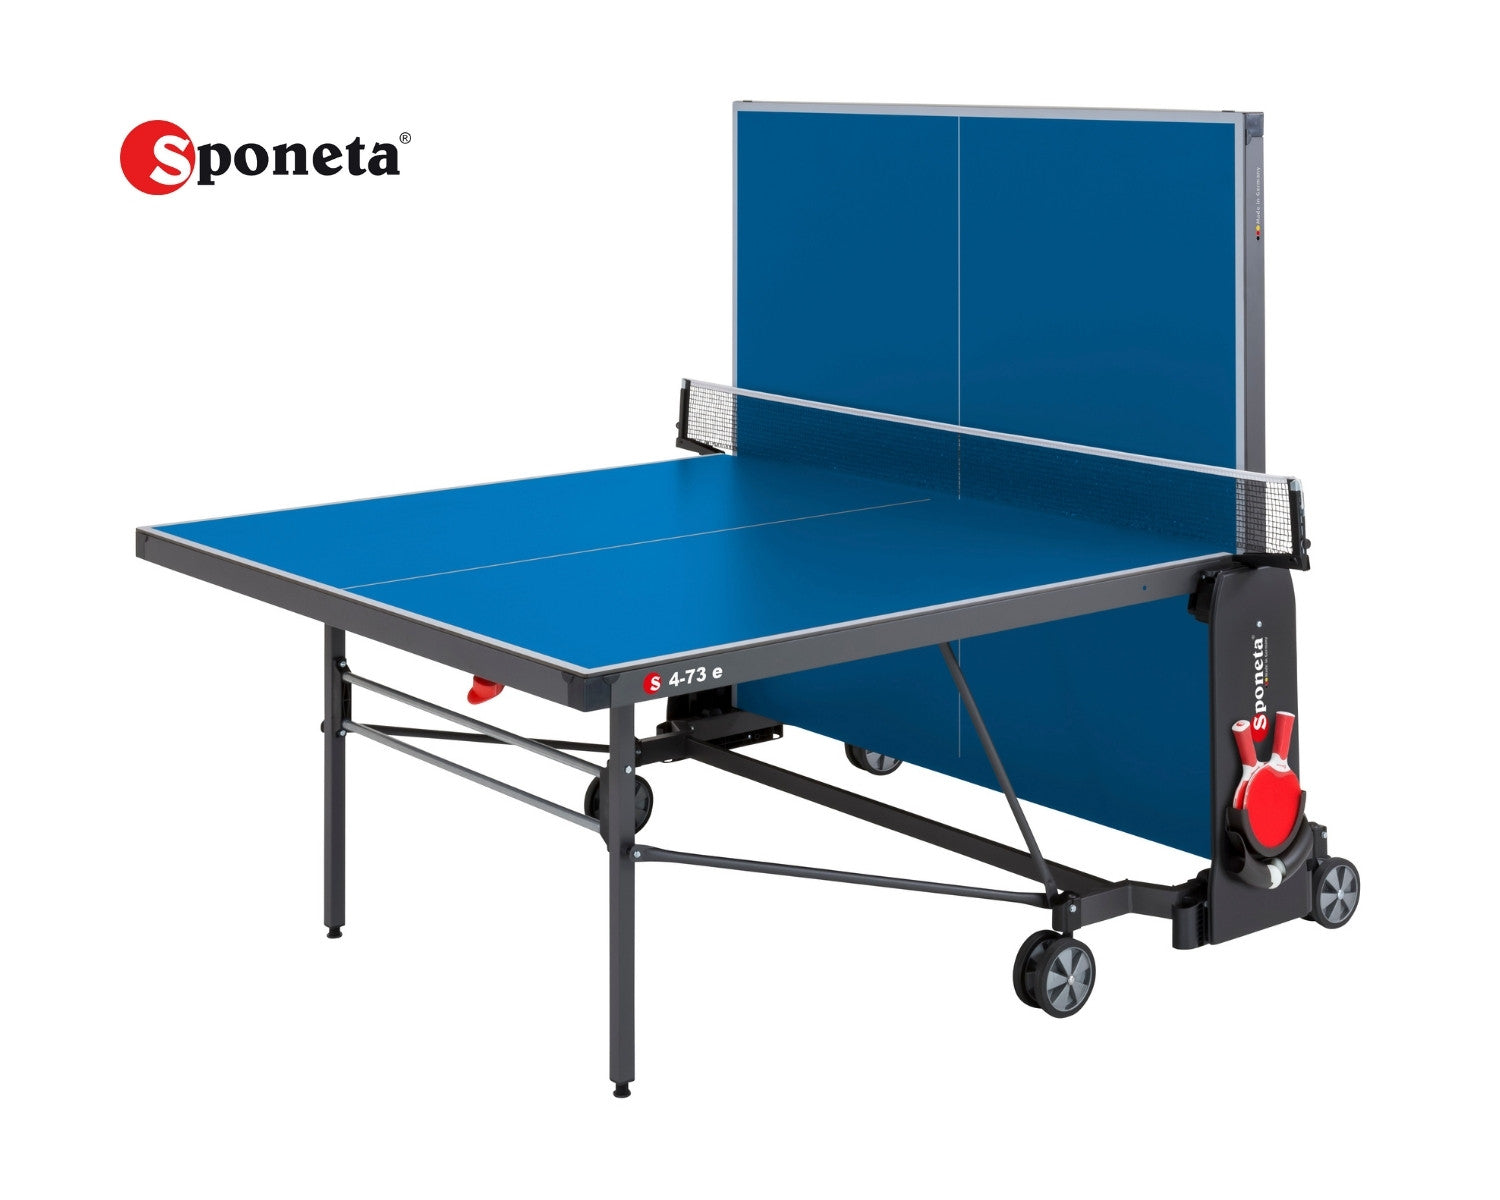 Sponeta Tavolo da Ping Pong Outdoor S 4-73 e